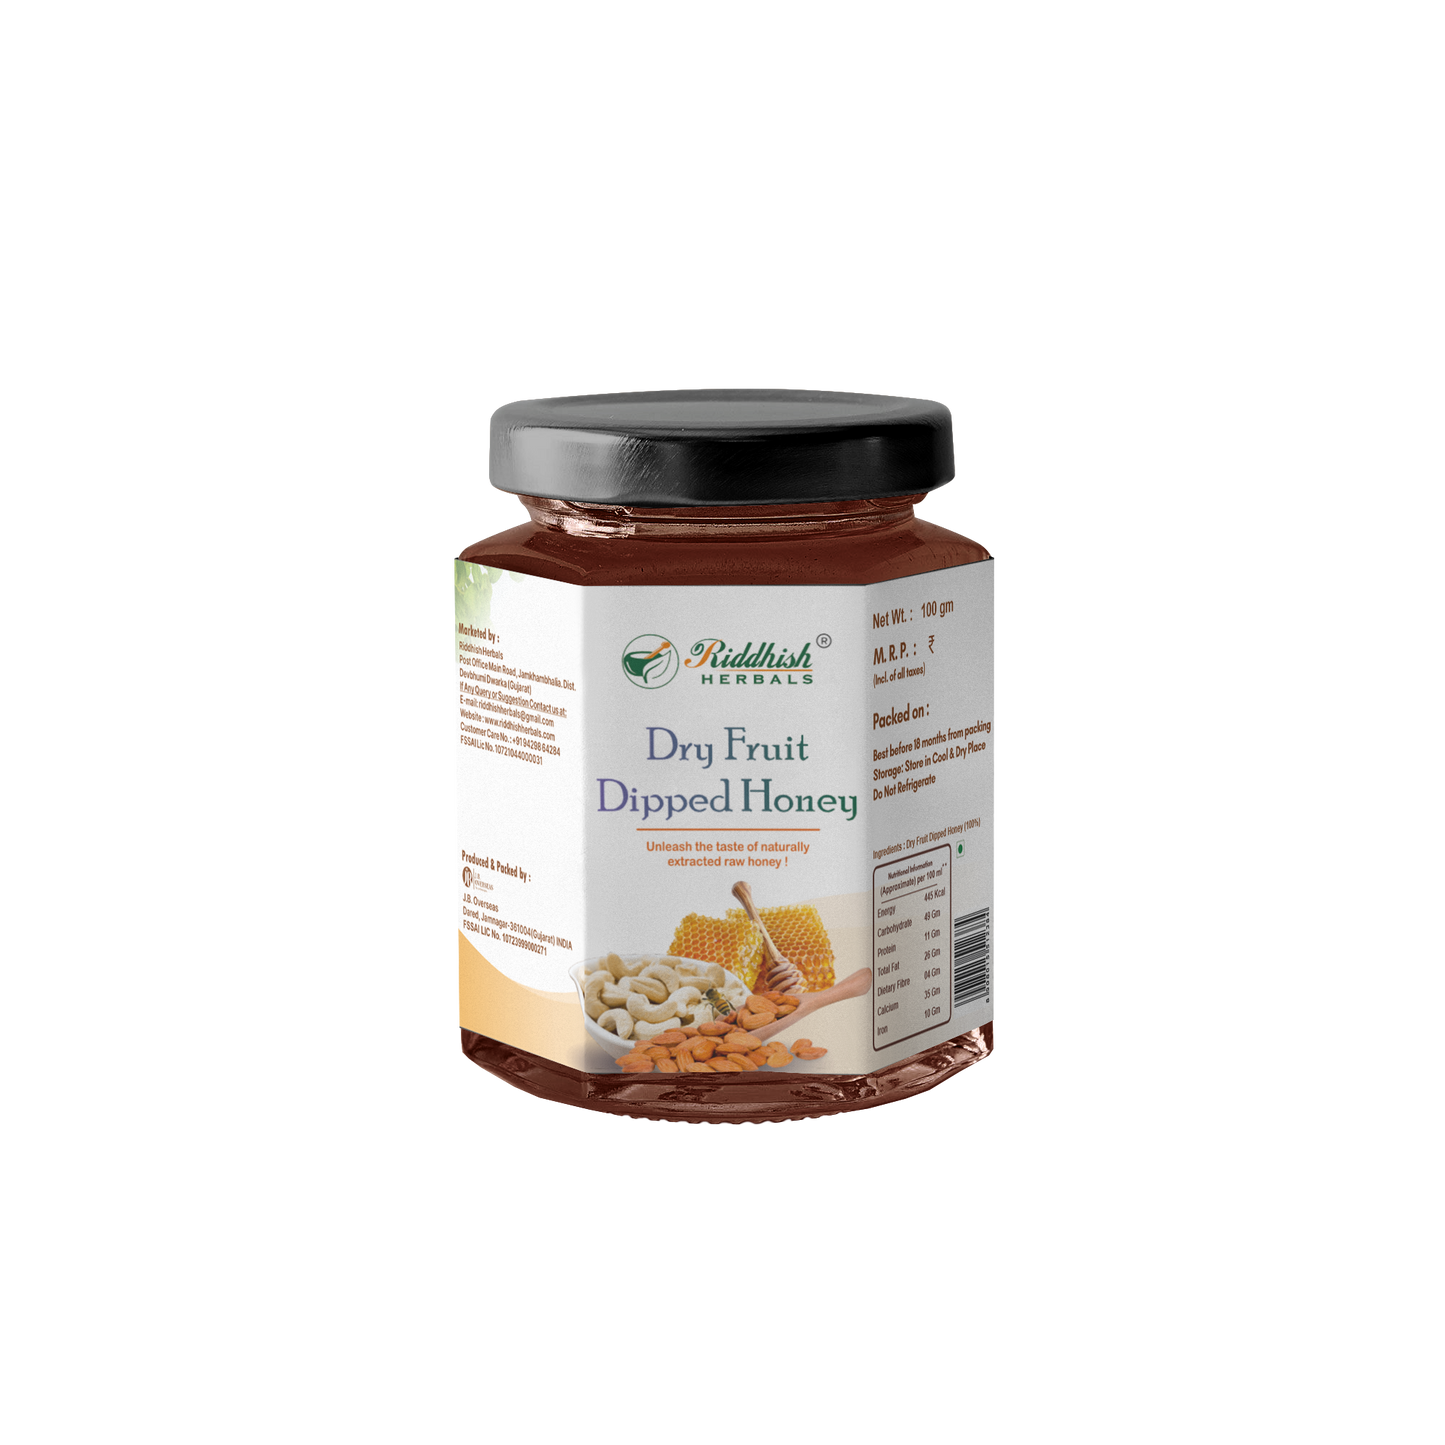 Riddhish Herbals Dryfruit Dipped Organic Honey | Cashew and Almond